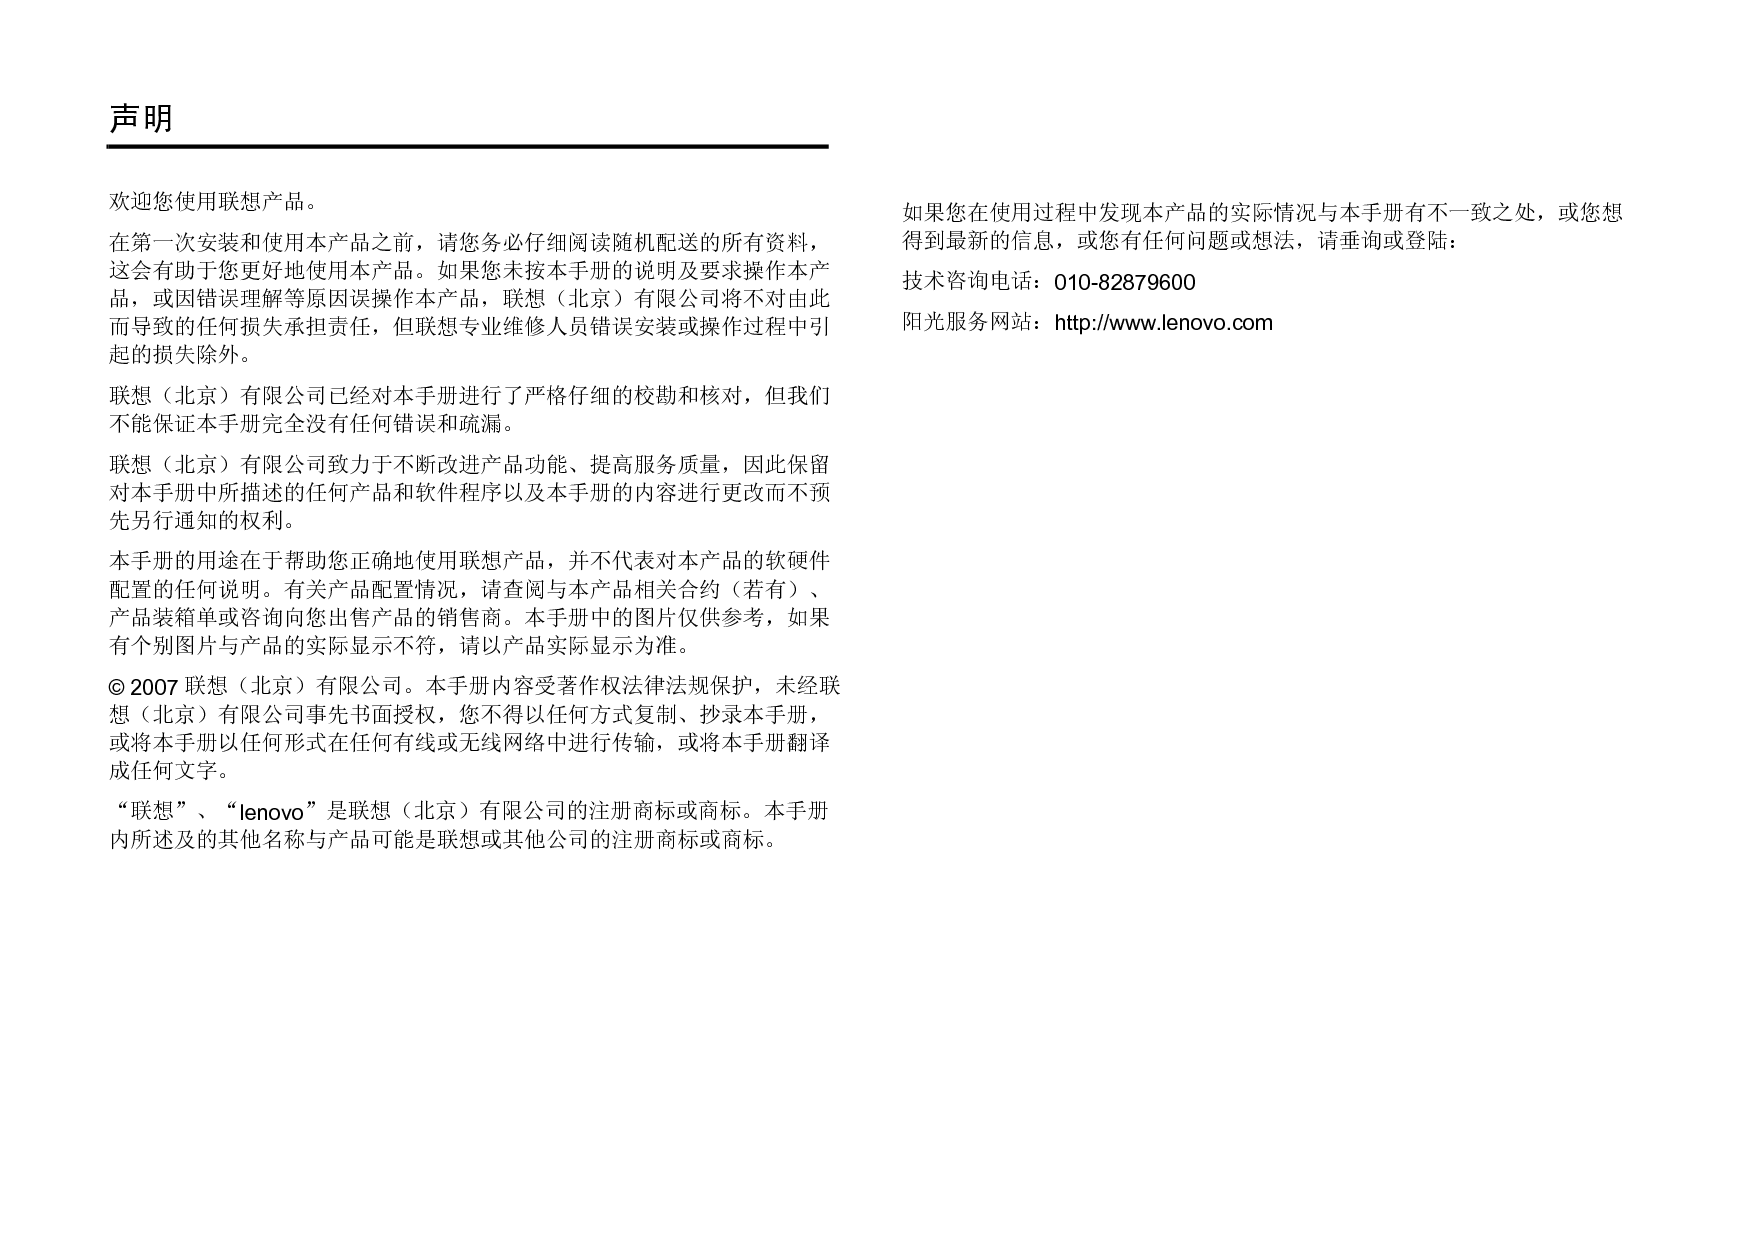 联想 Lenovo M930 用户手册 第1页